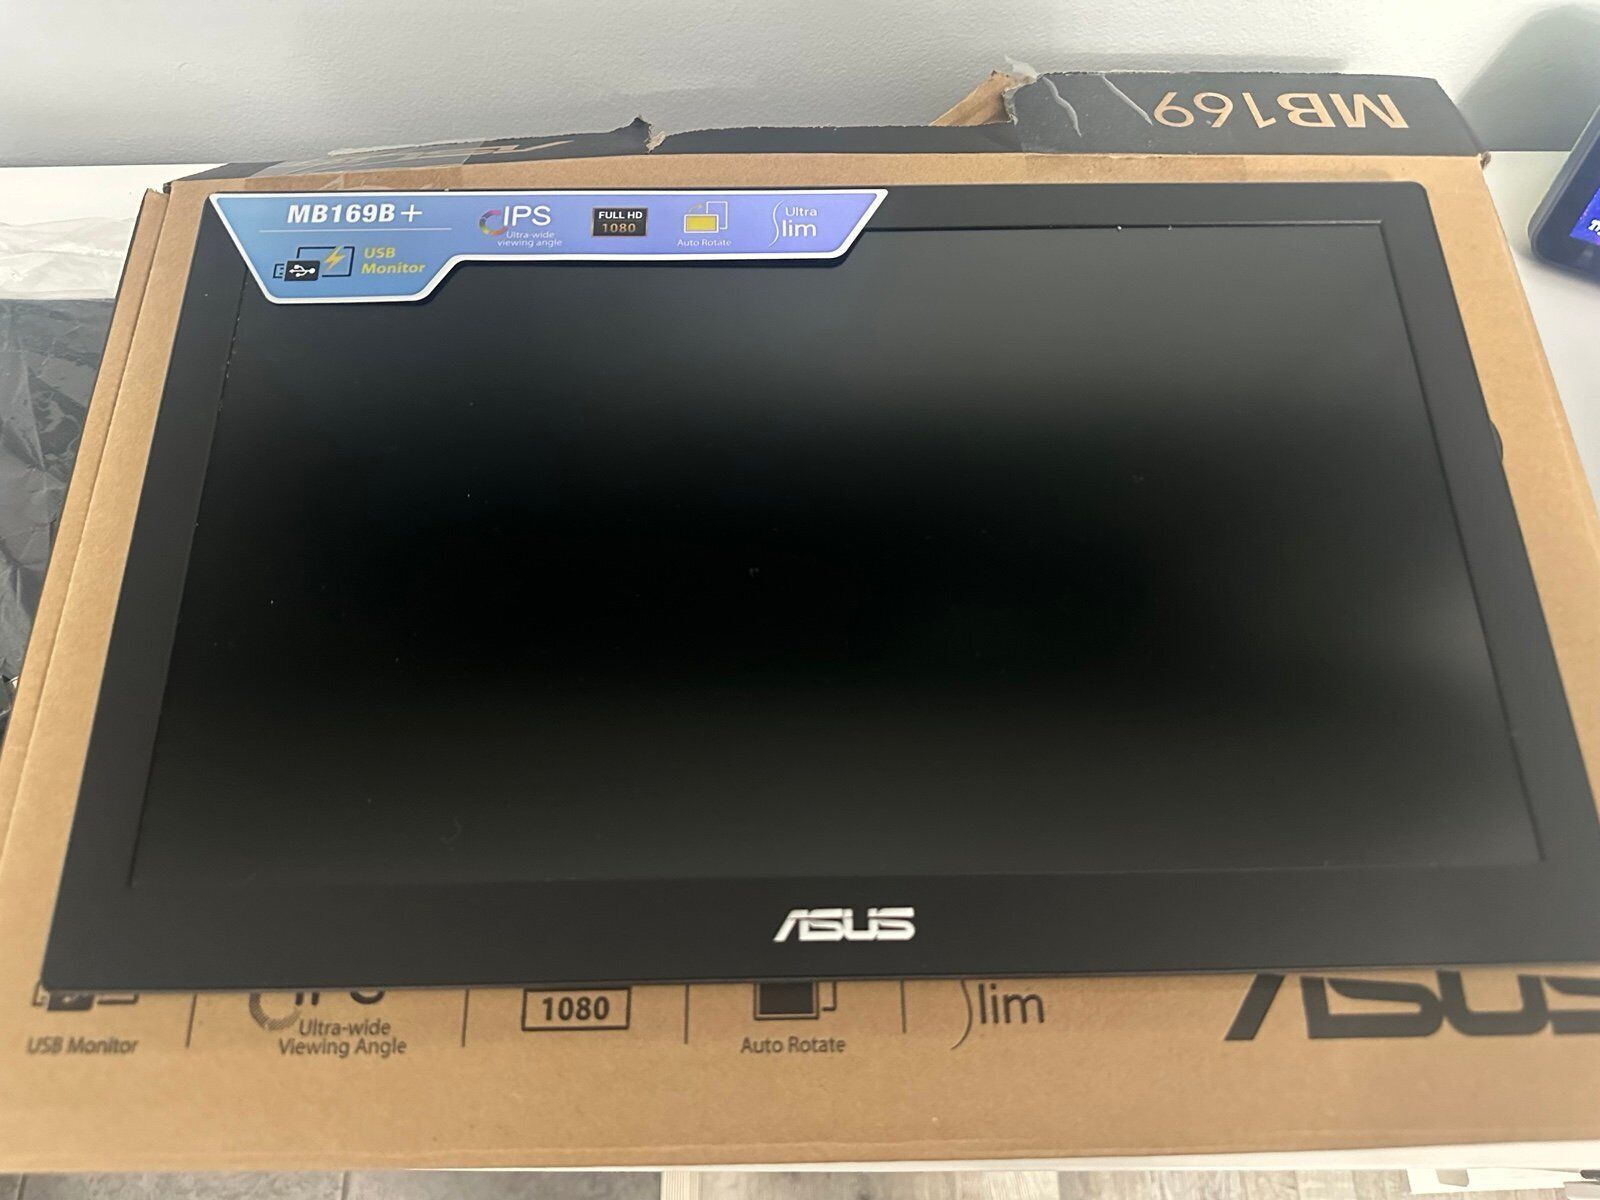 Asus LCD 15.6 MB169+ IPS, MB169B+ Portable Monitor